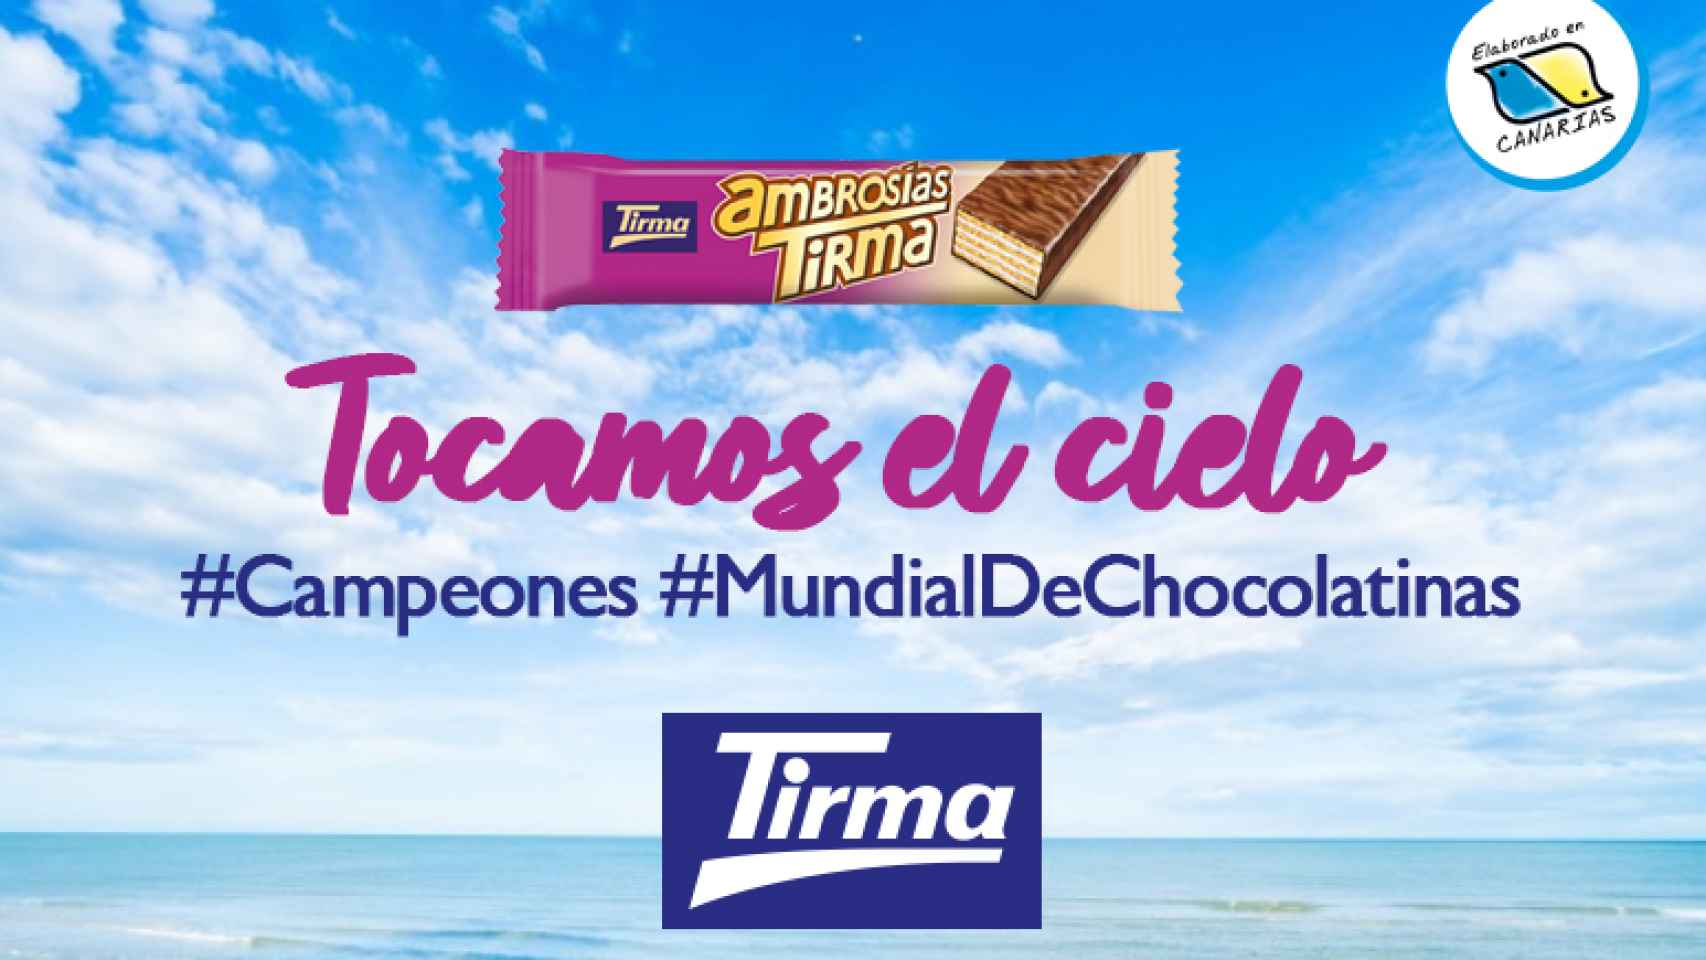 Imagen de Tirma, enorgulleciéndose de que su producto haya ganado el Mundial de las Chocolatinas.